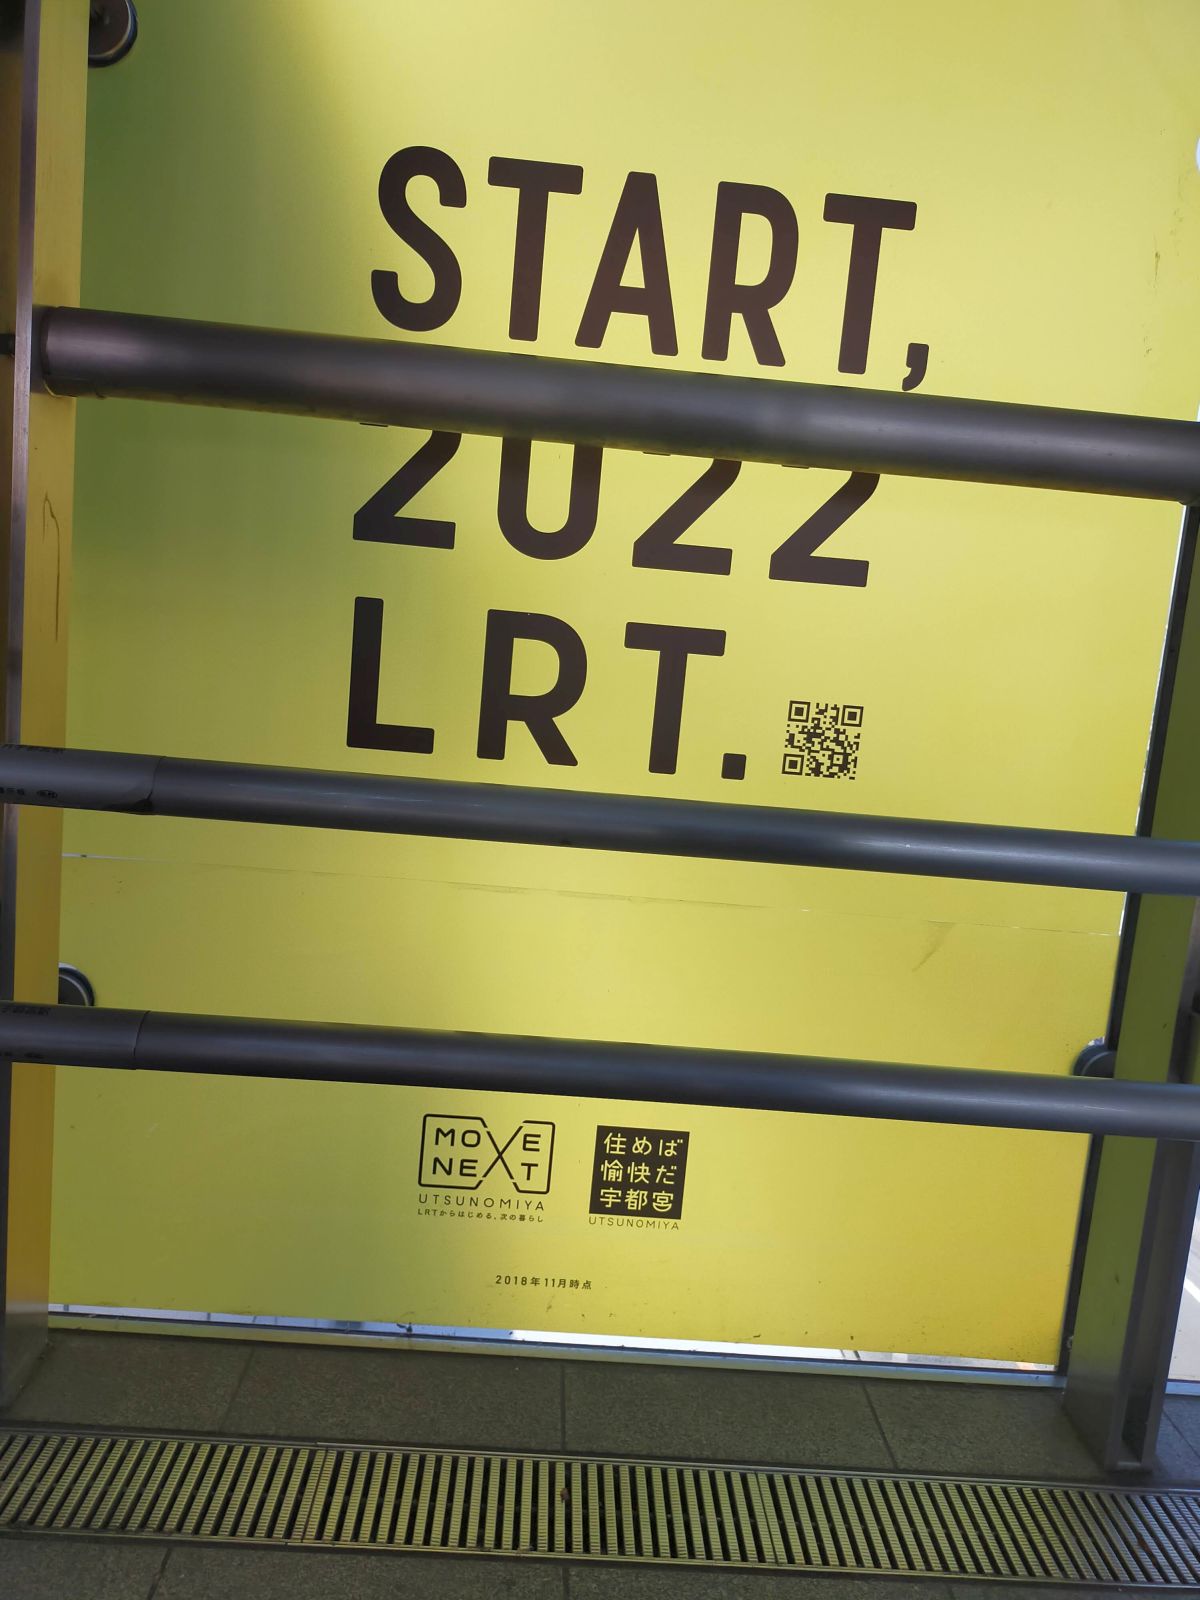 START,2022 LRT.